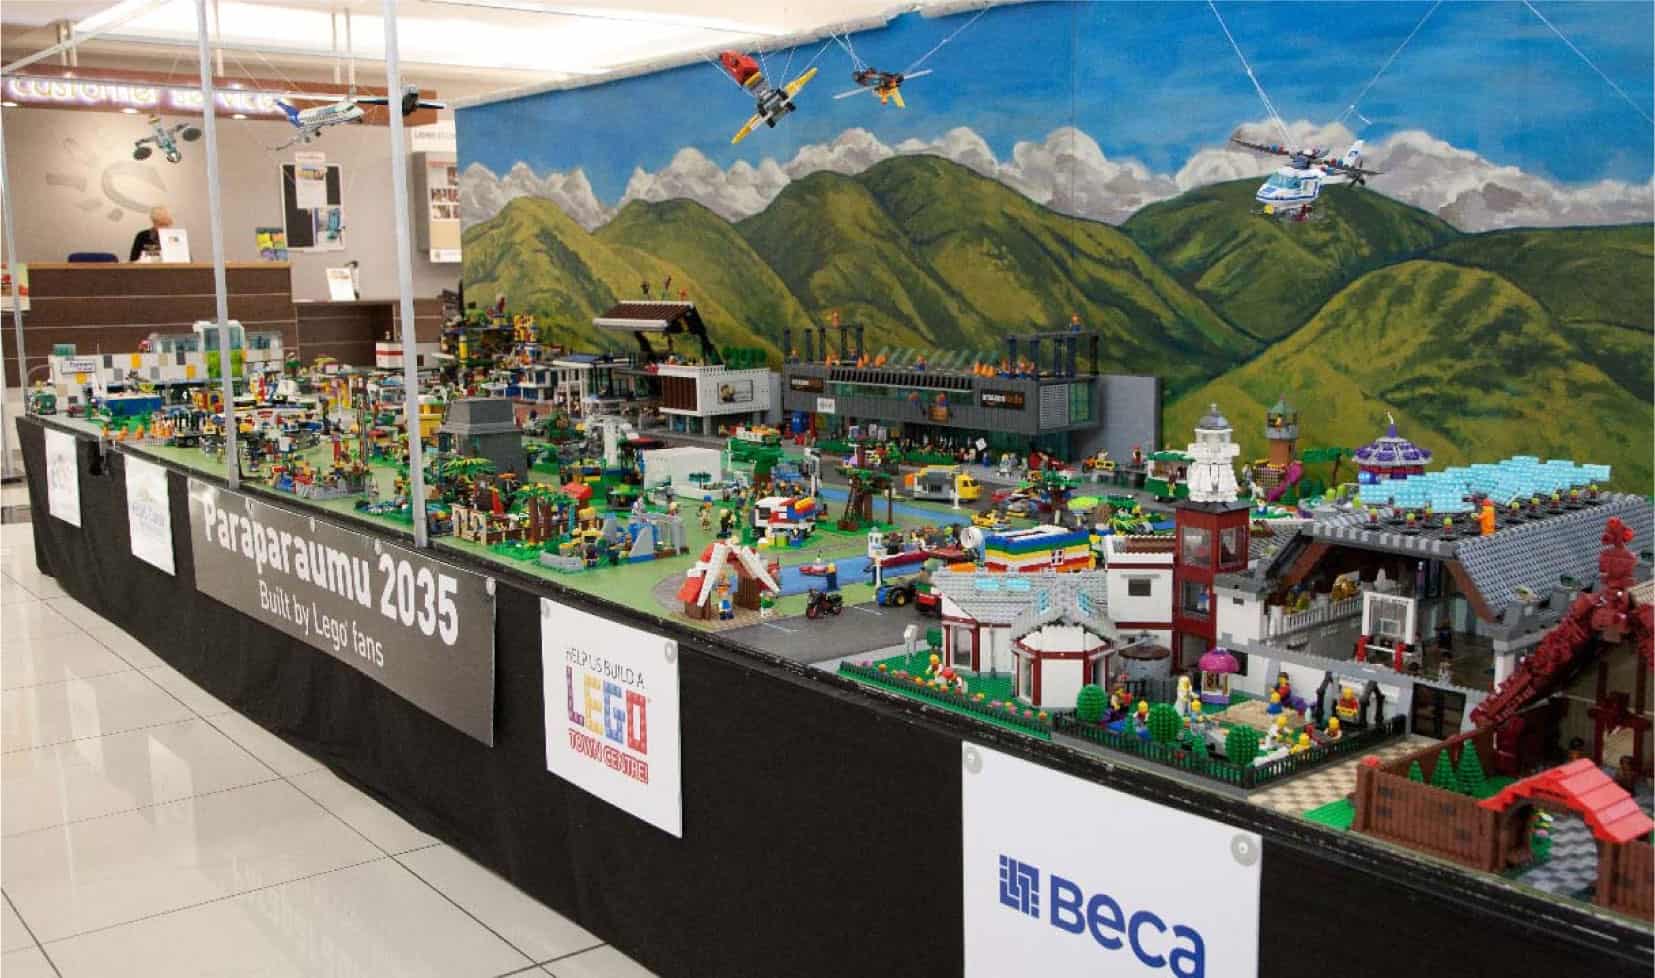 2015 Lego Town Centre